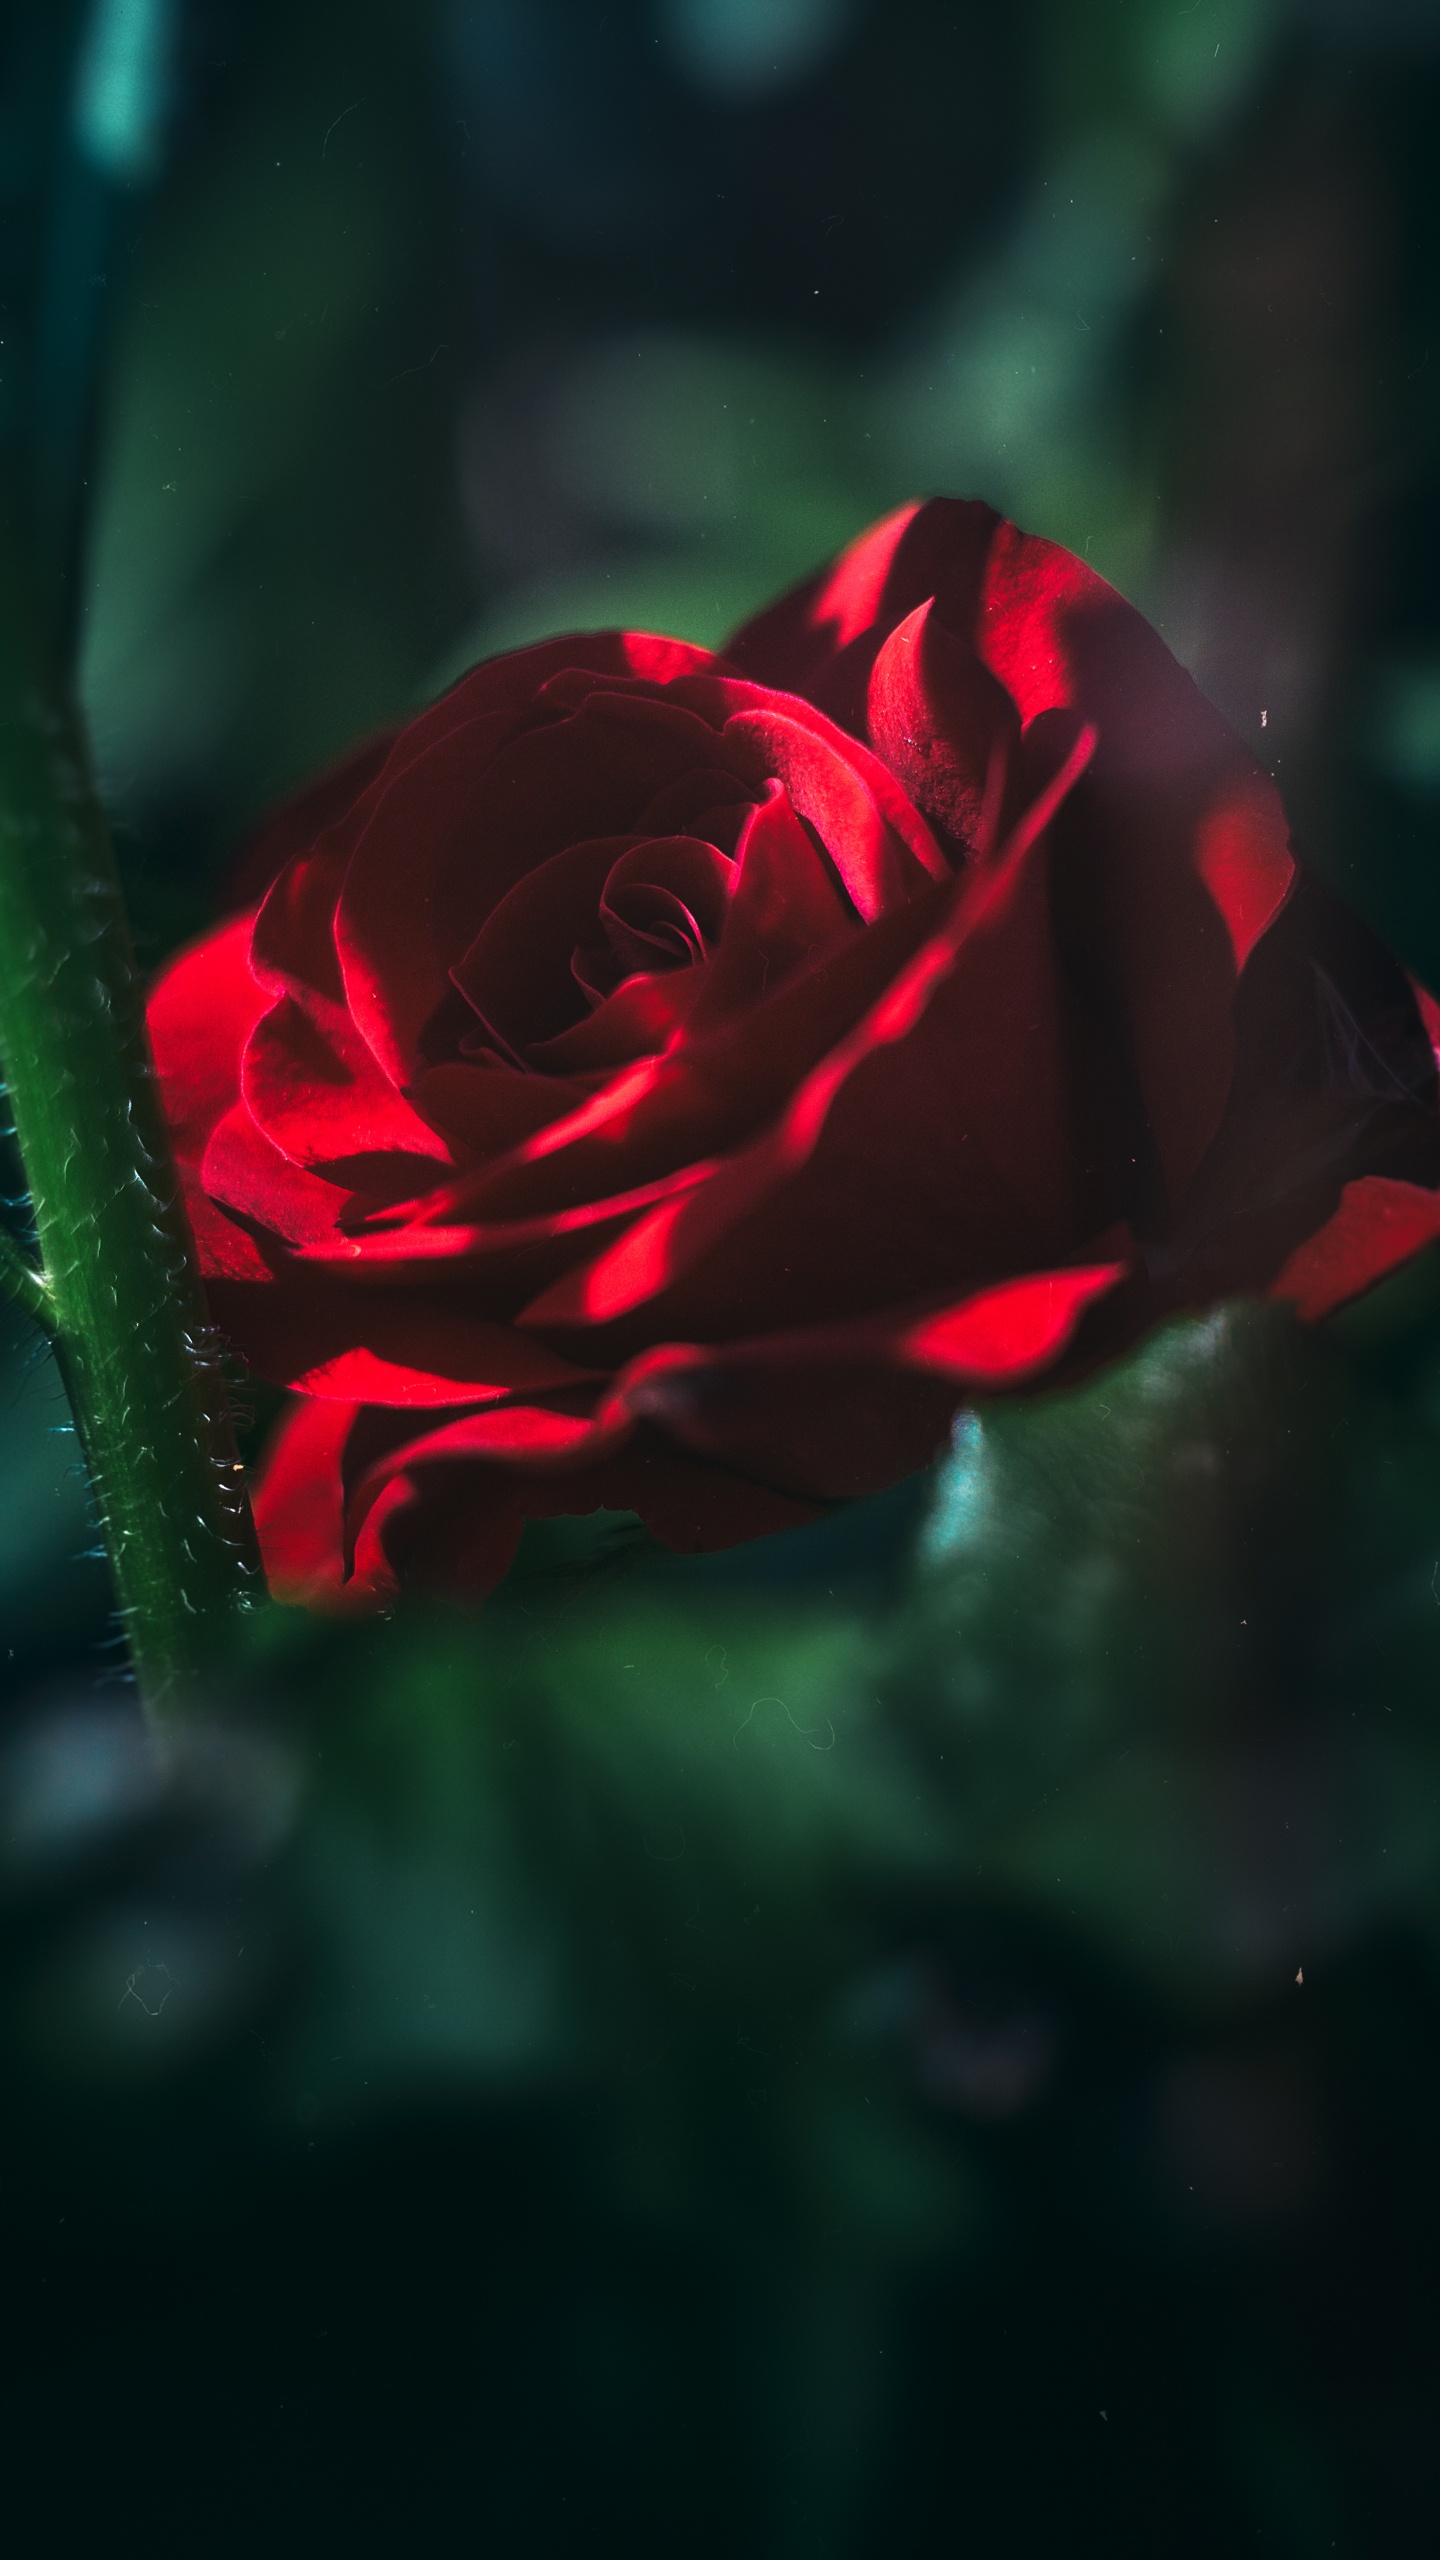 Rosa Roja en Flor en Fotografía de Cerca. Wallpaper in 1440x2560 Resolution